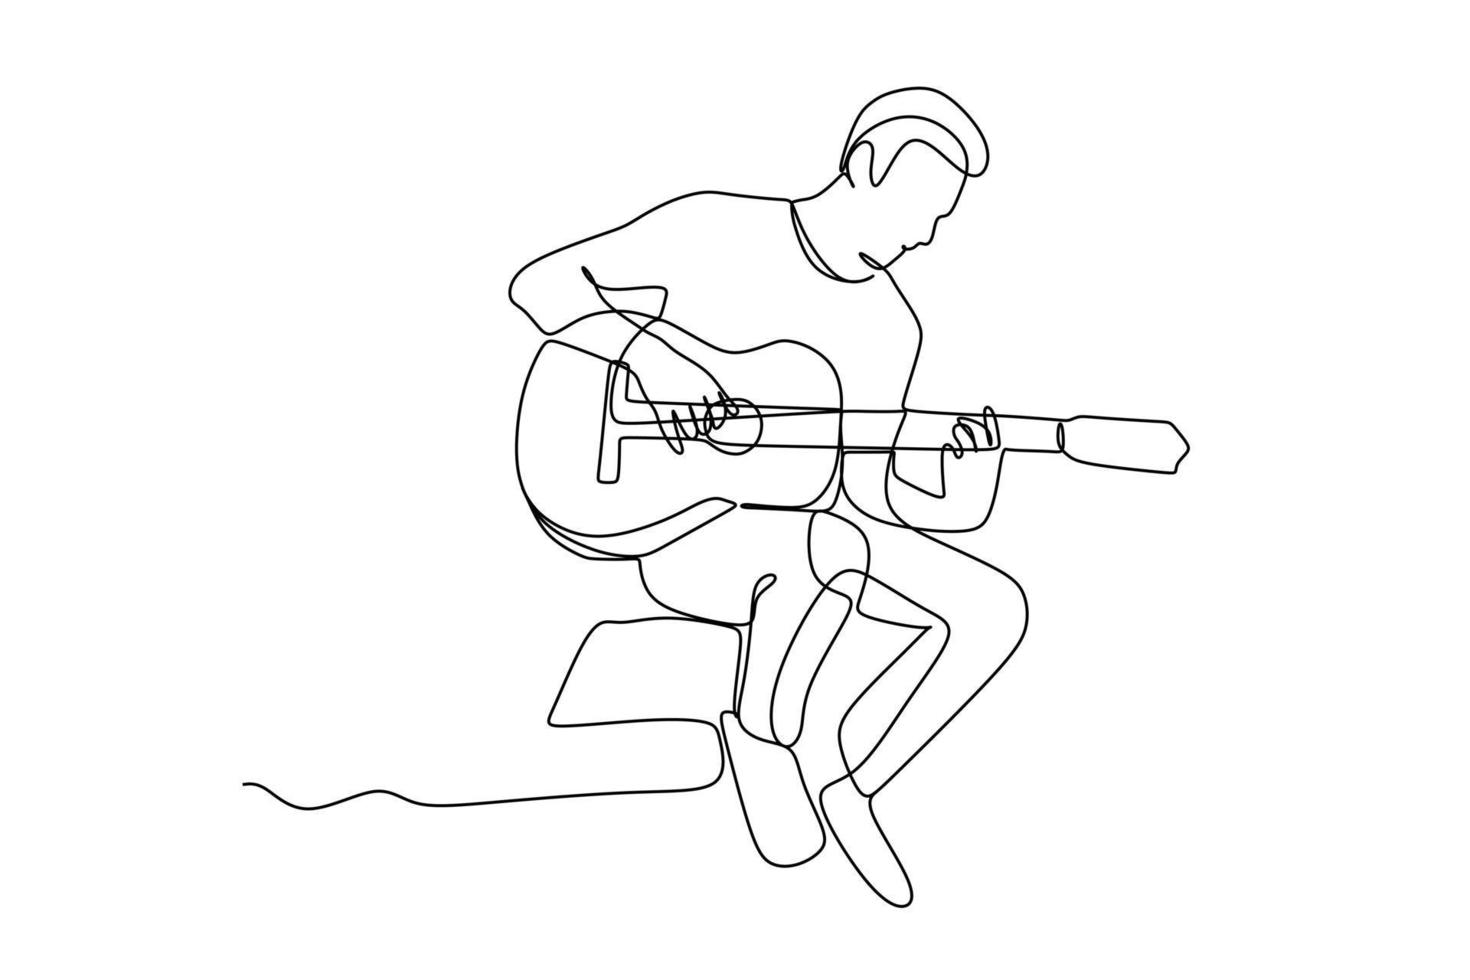 desenho de linha contínua de um guitarrista sentado do sexo masculino tocando guitarra. conceito de performance de artista de músico dinâmico ilustração em vetor design de desenho gráfico de linha única